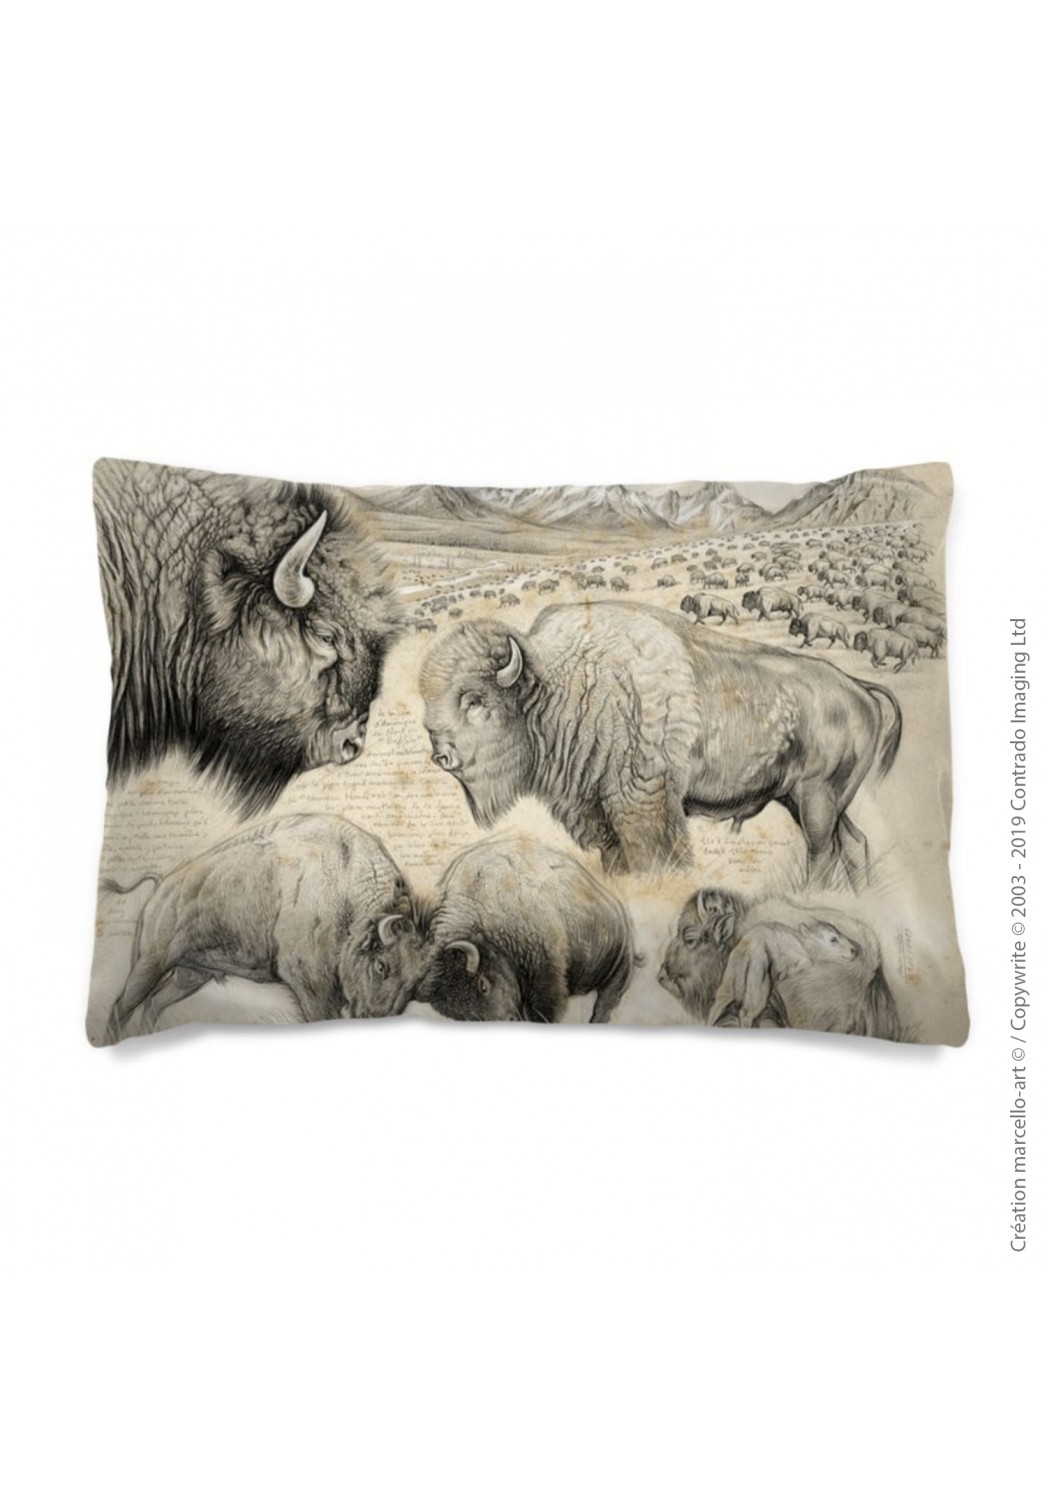 Marcello-art: Fashion accessory Pillowcase 390 A bison